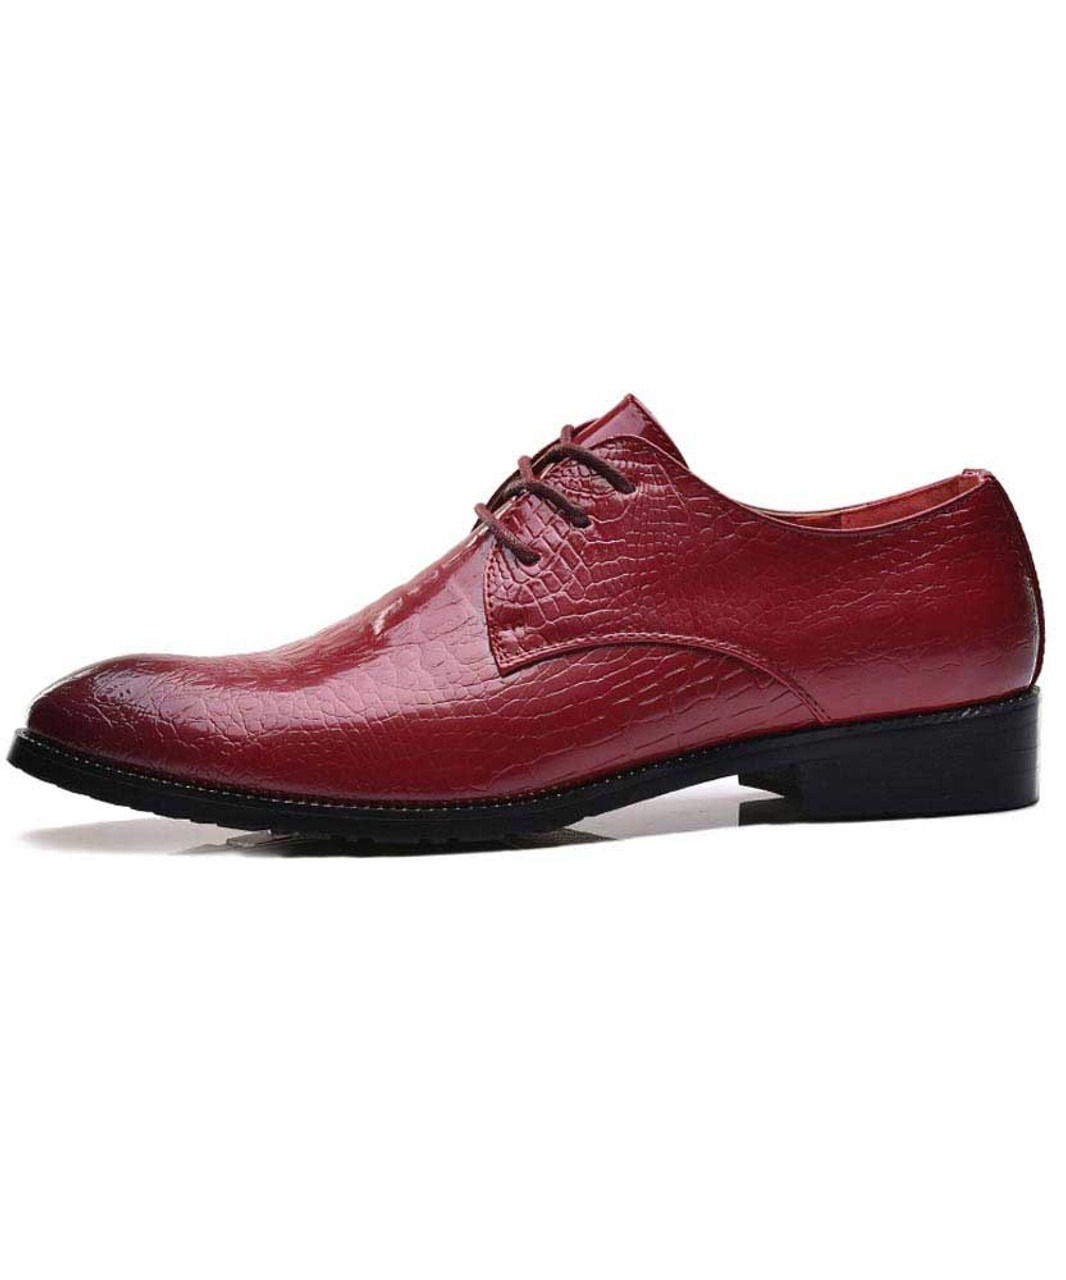 Red retro crocodile skin pattern derby dress shoe | Mens dress shoes ...